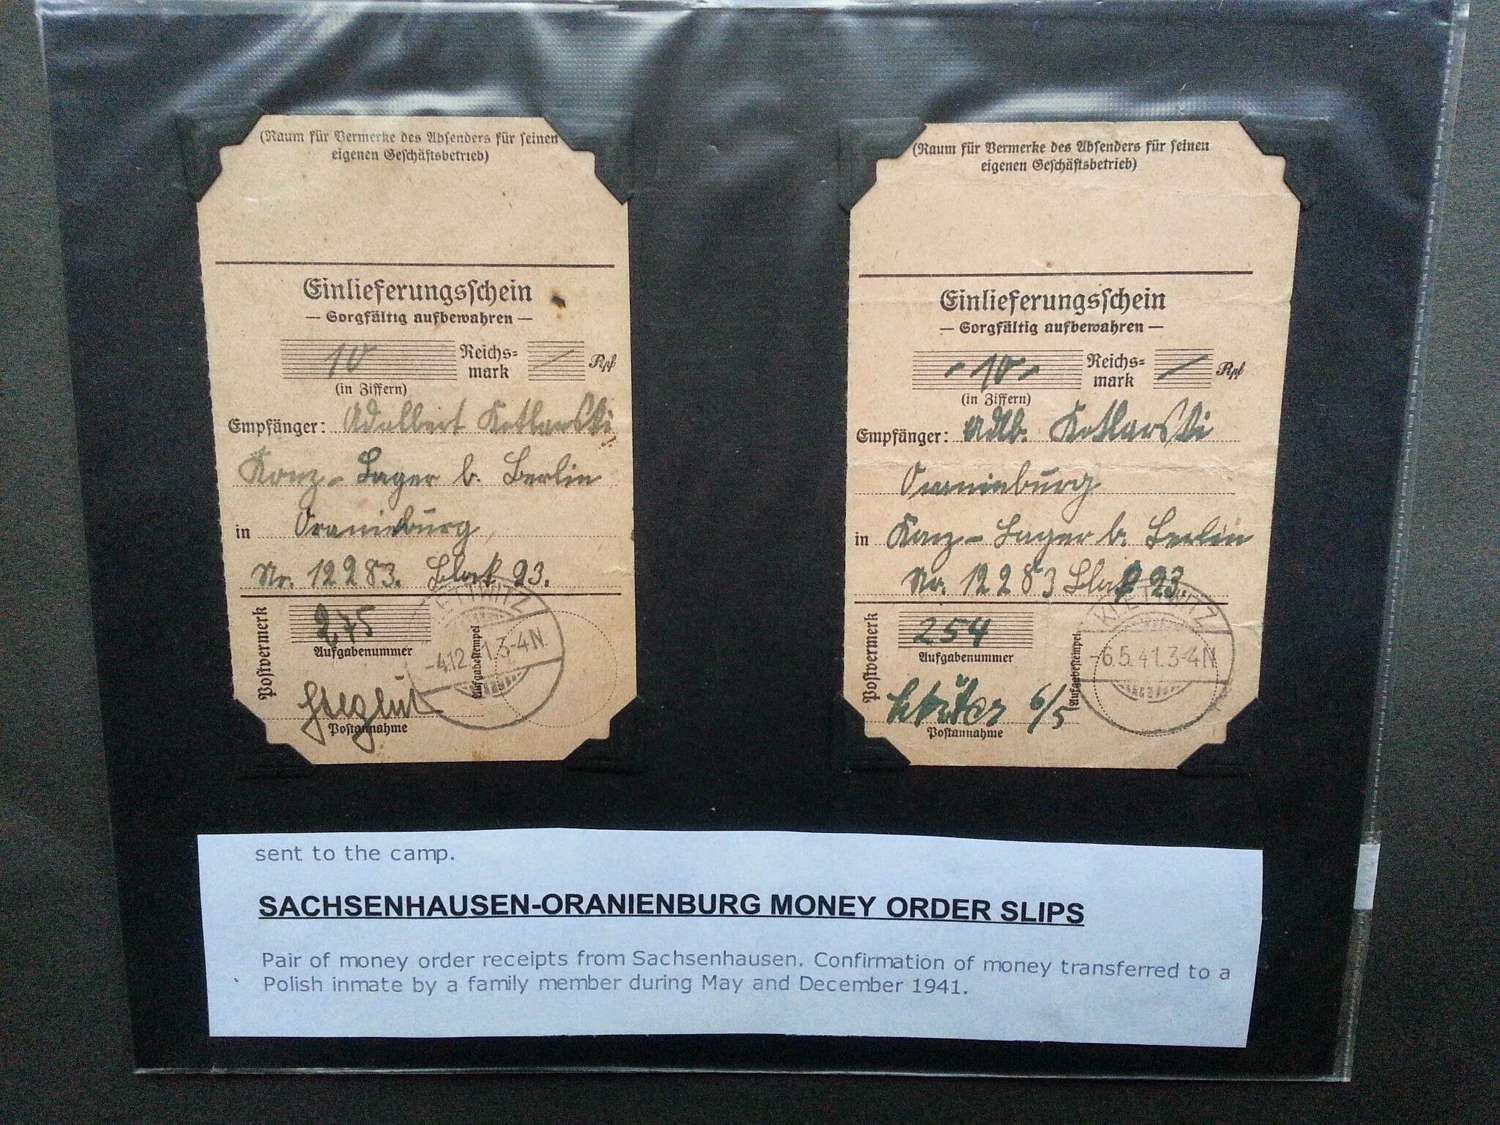 Money Order Slips Sachsenhausen-Oranienburg